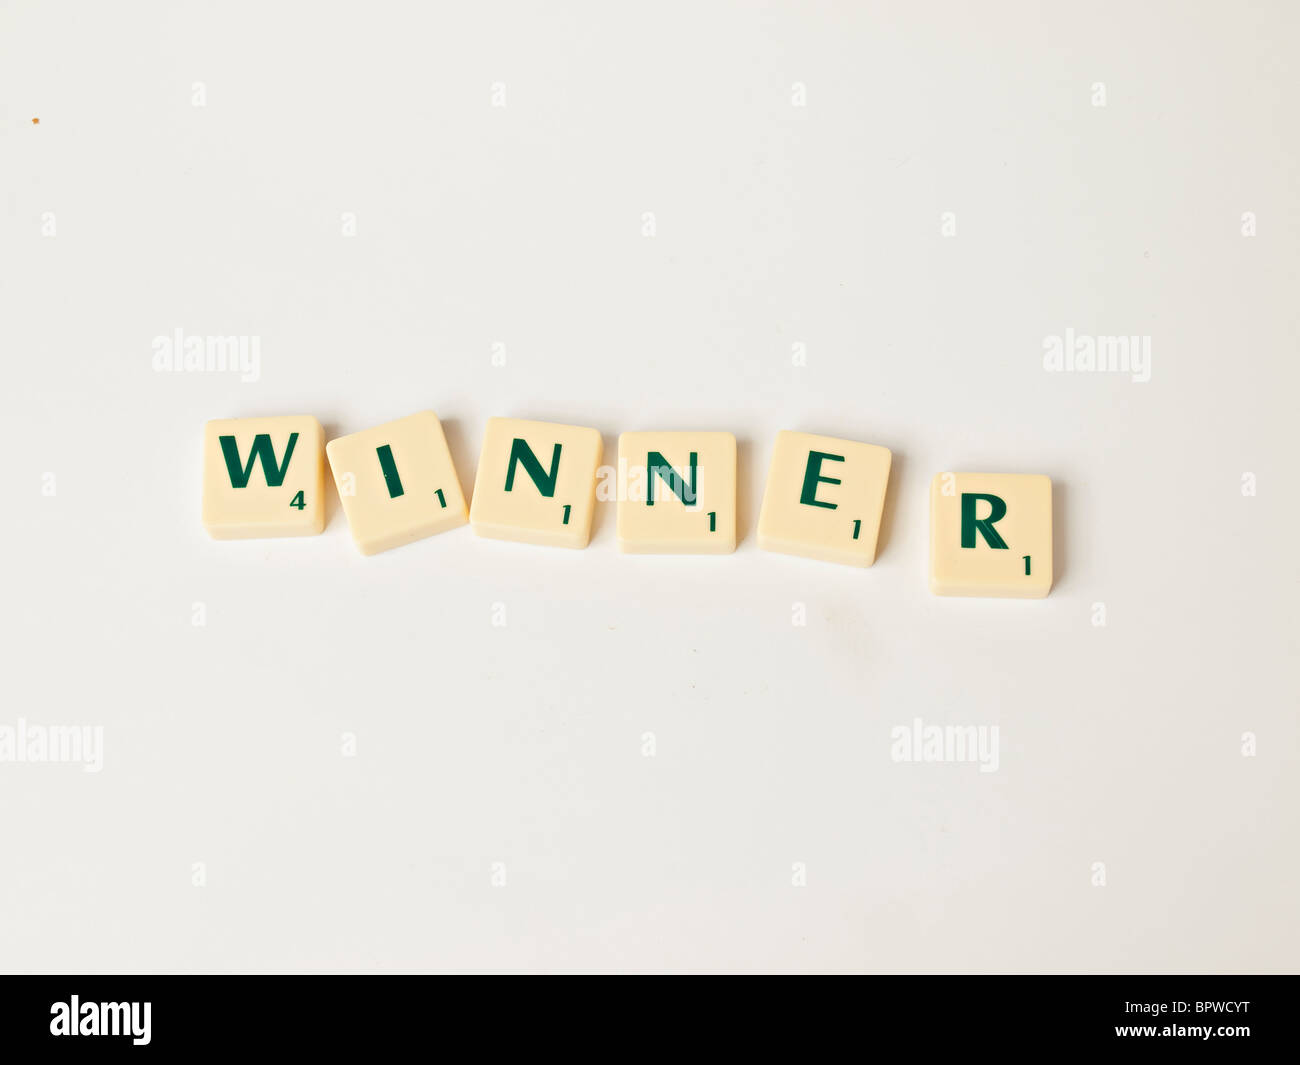 Scrabble tiles making the word 'Winner' Stock Photo